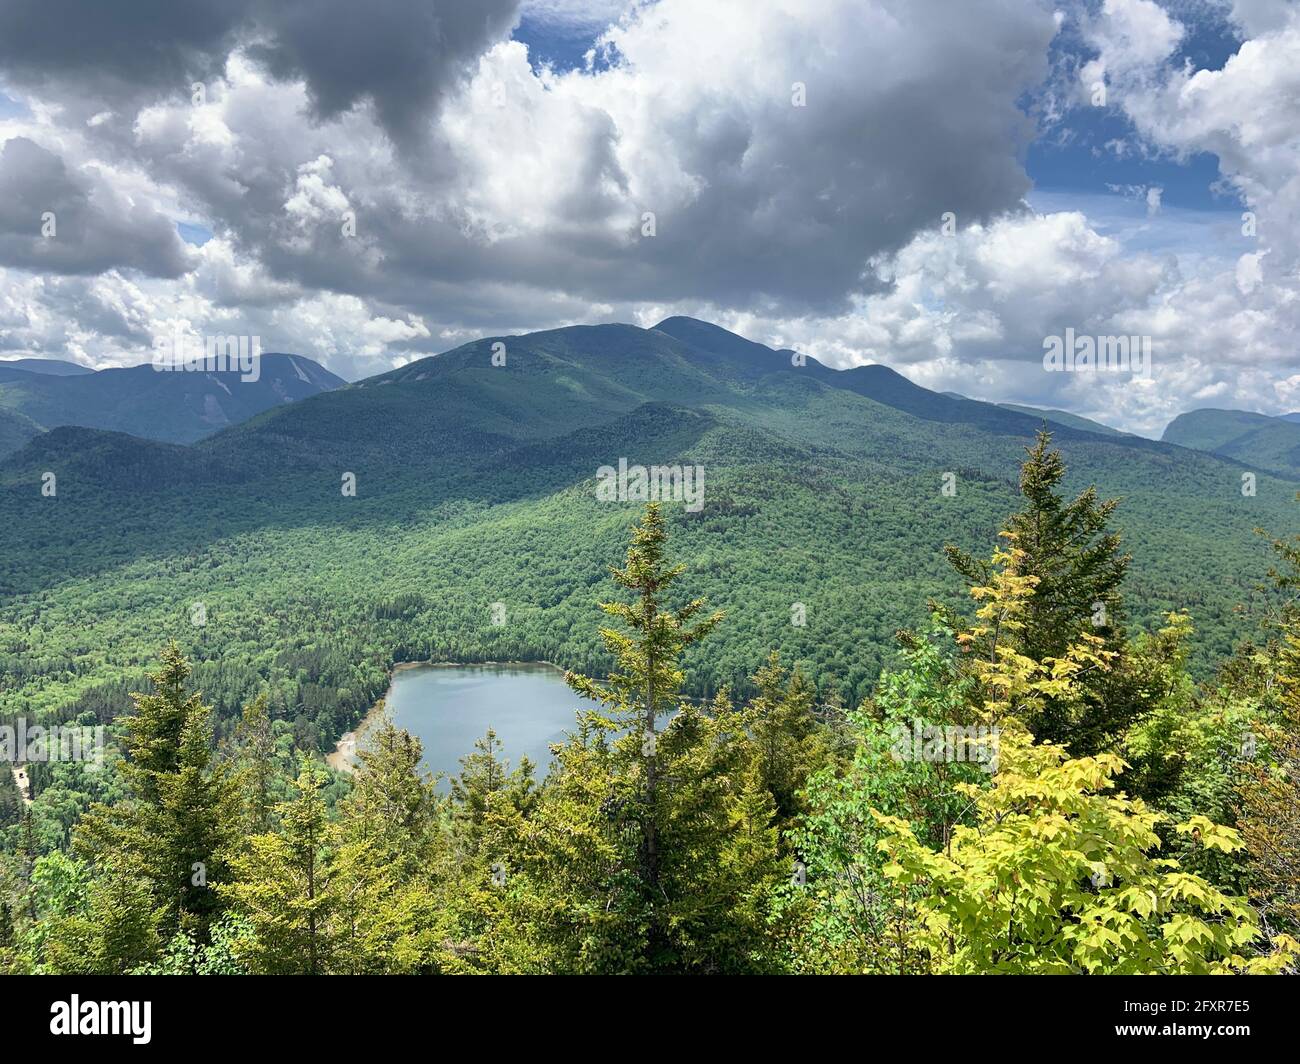 Nuvole sulle alte vette delle Adirondack Mountains e Heart Lake vicino al lago Placid, New York state, Stati Uniti d'America, Nord America Foto Stock